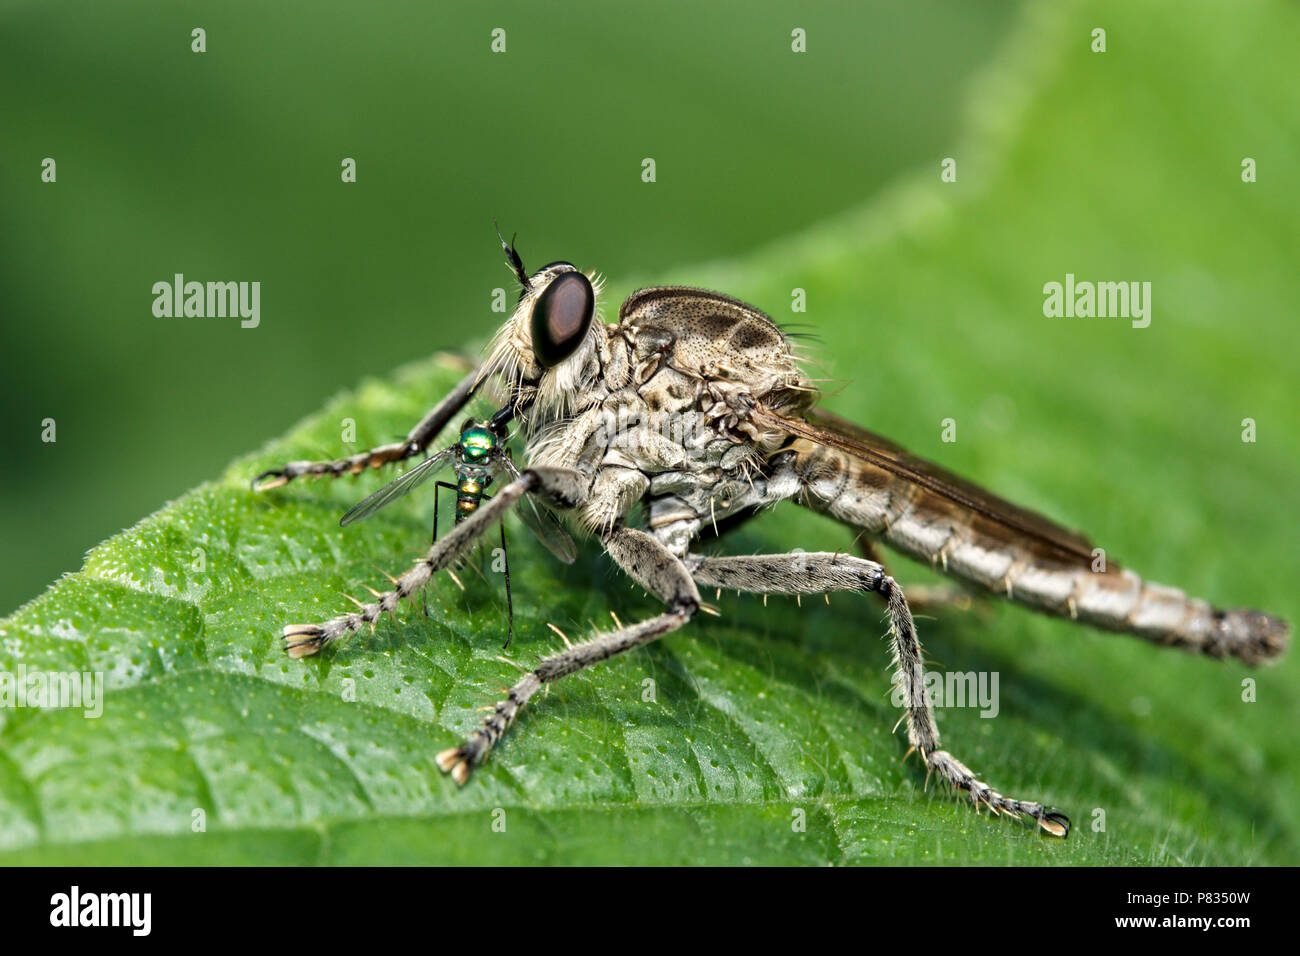 Chiusura del rapinatore fly o cannibale volare anche chiamato assassin fly, Dysmachus trigonus, mangiare la sua preda seduto su una foglia verde Foto Stock